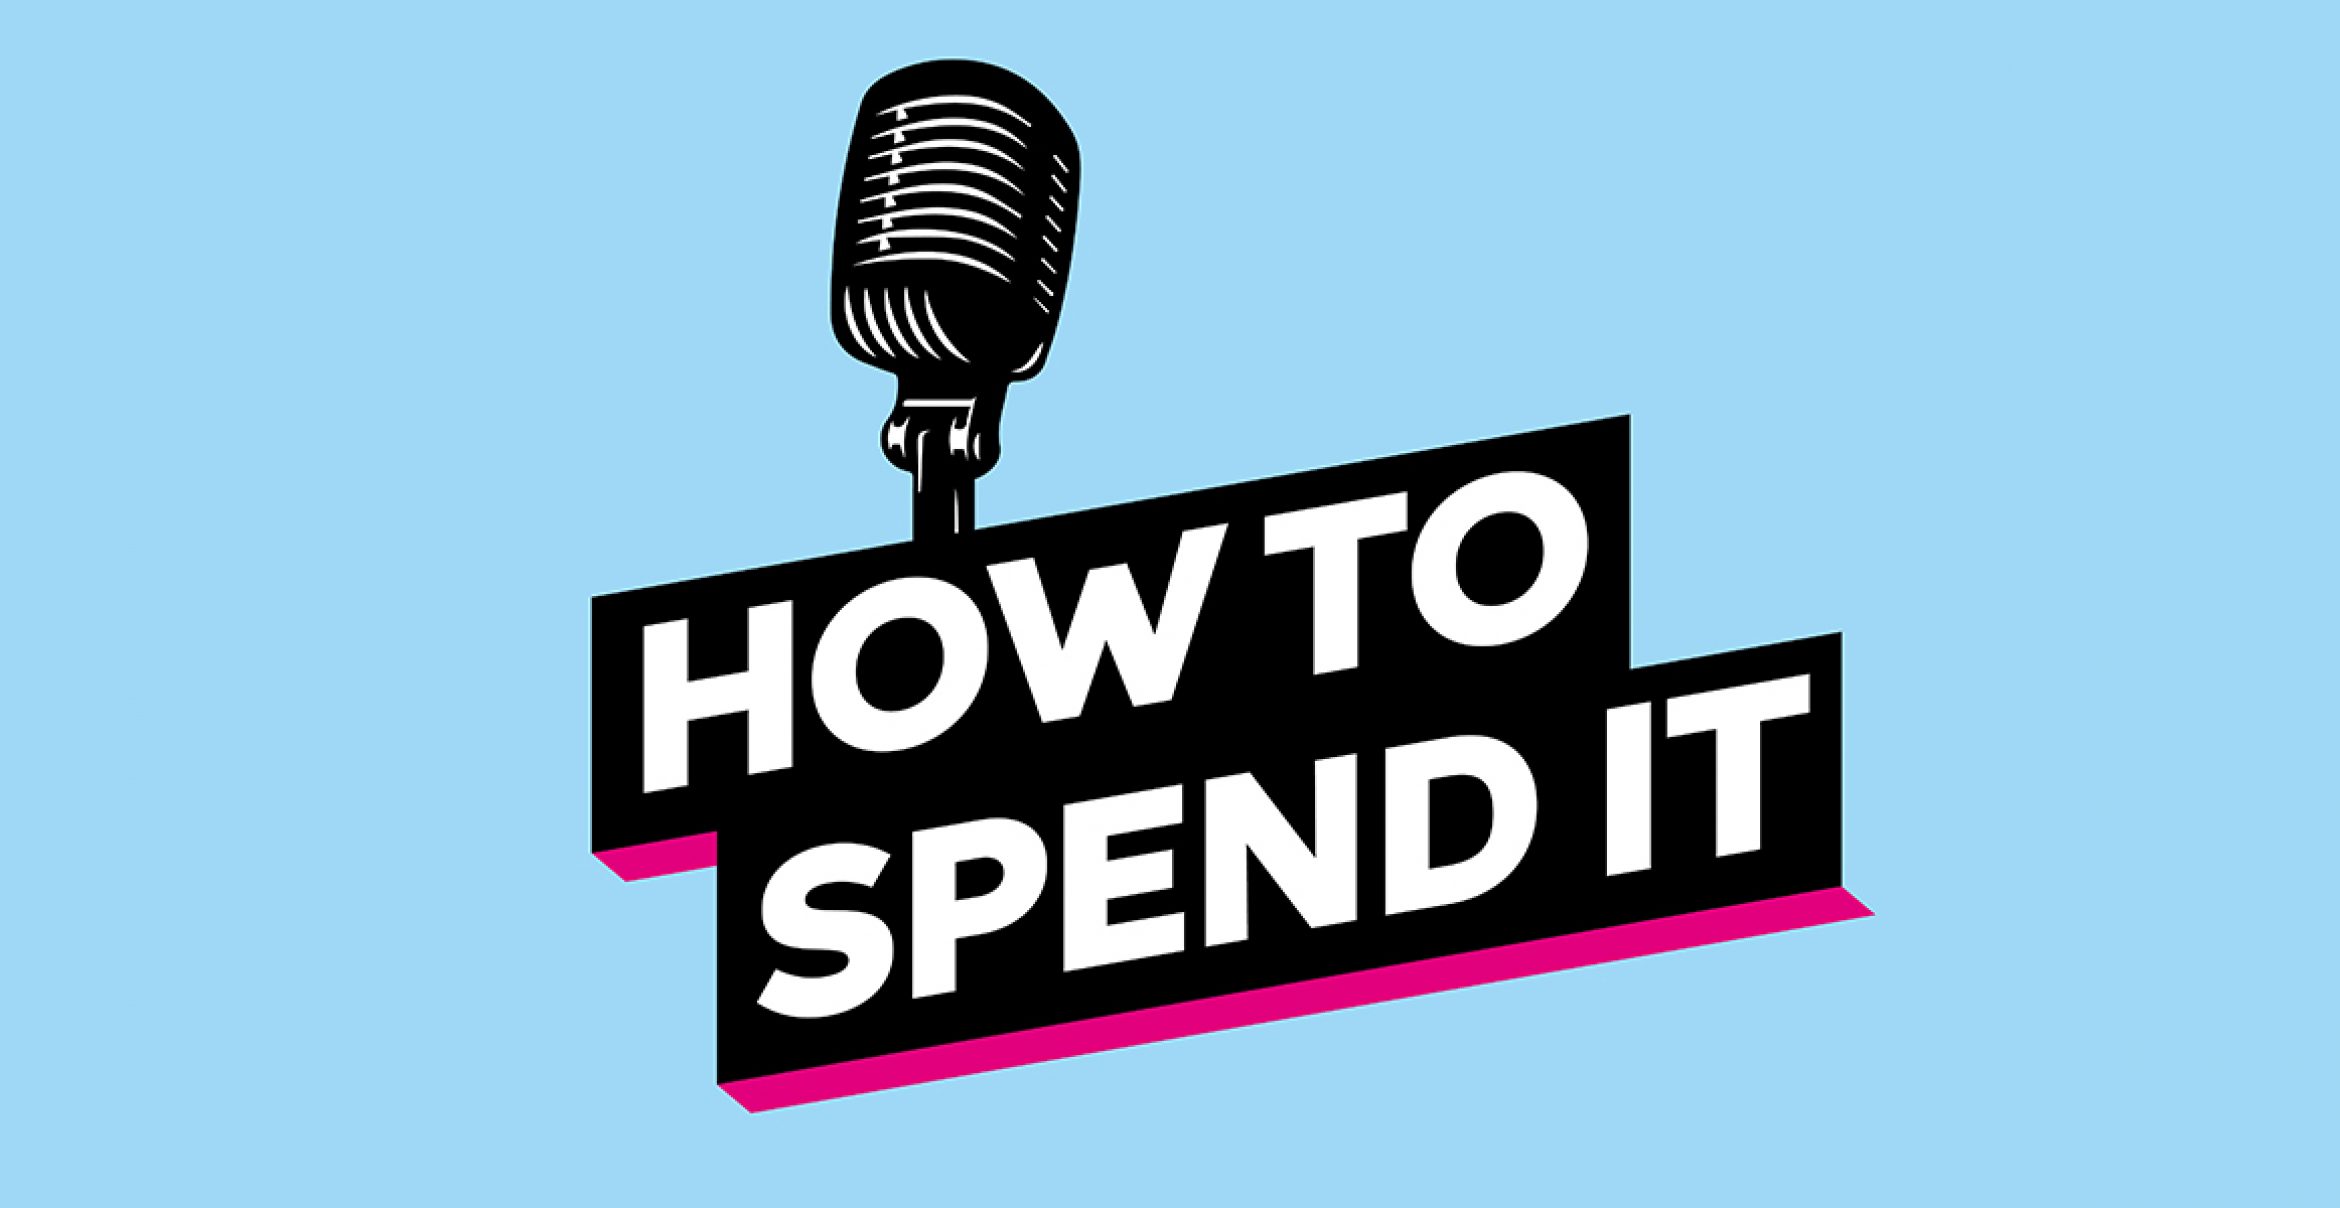 How to Spend It #10 Joko Winterscheidt: „Es geht nicht immer um den Return“